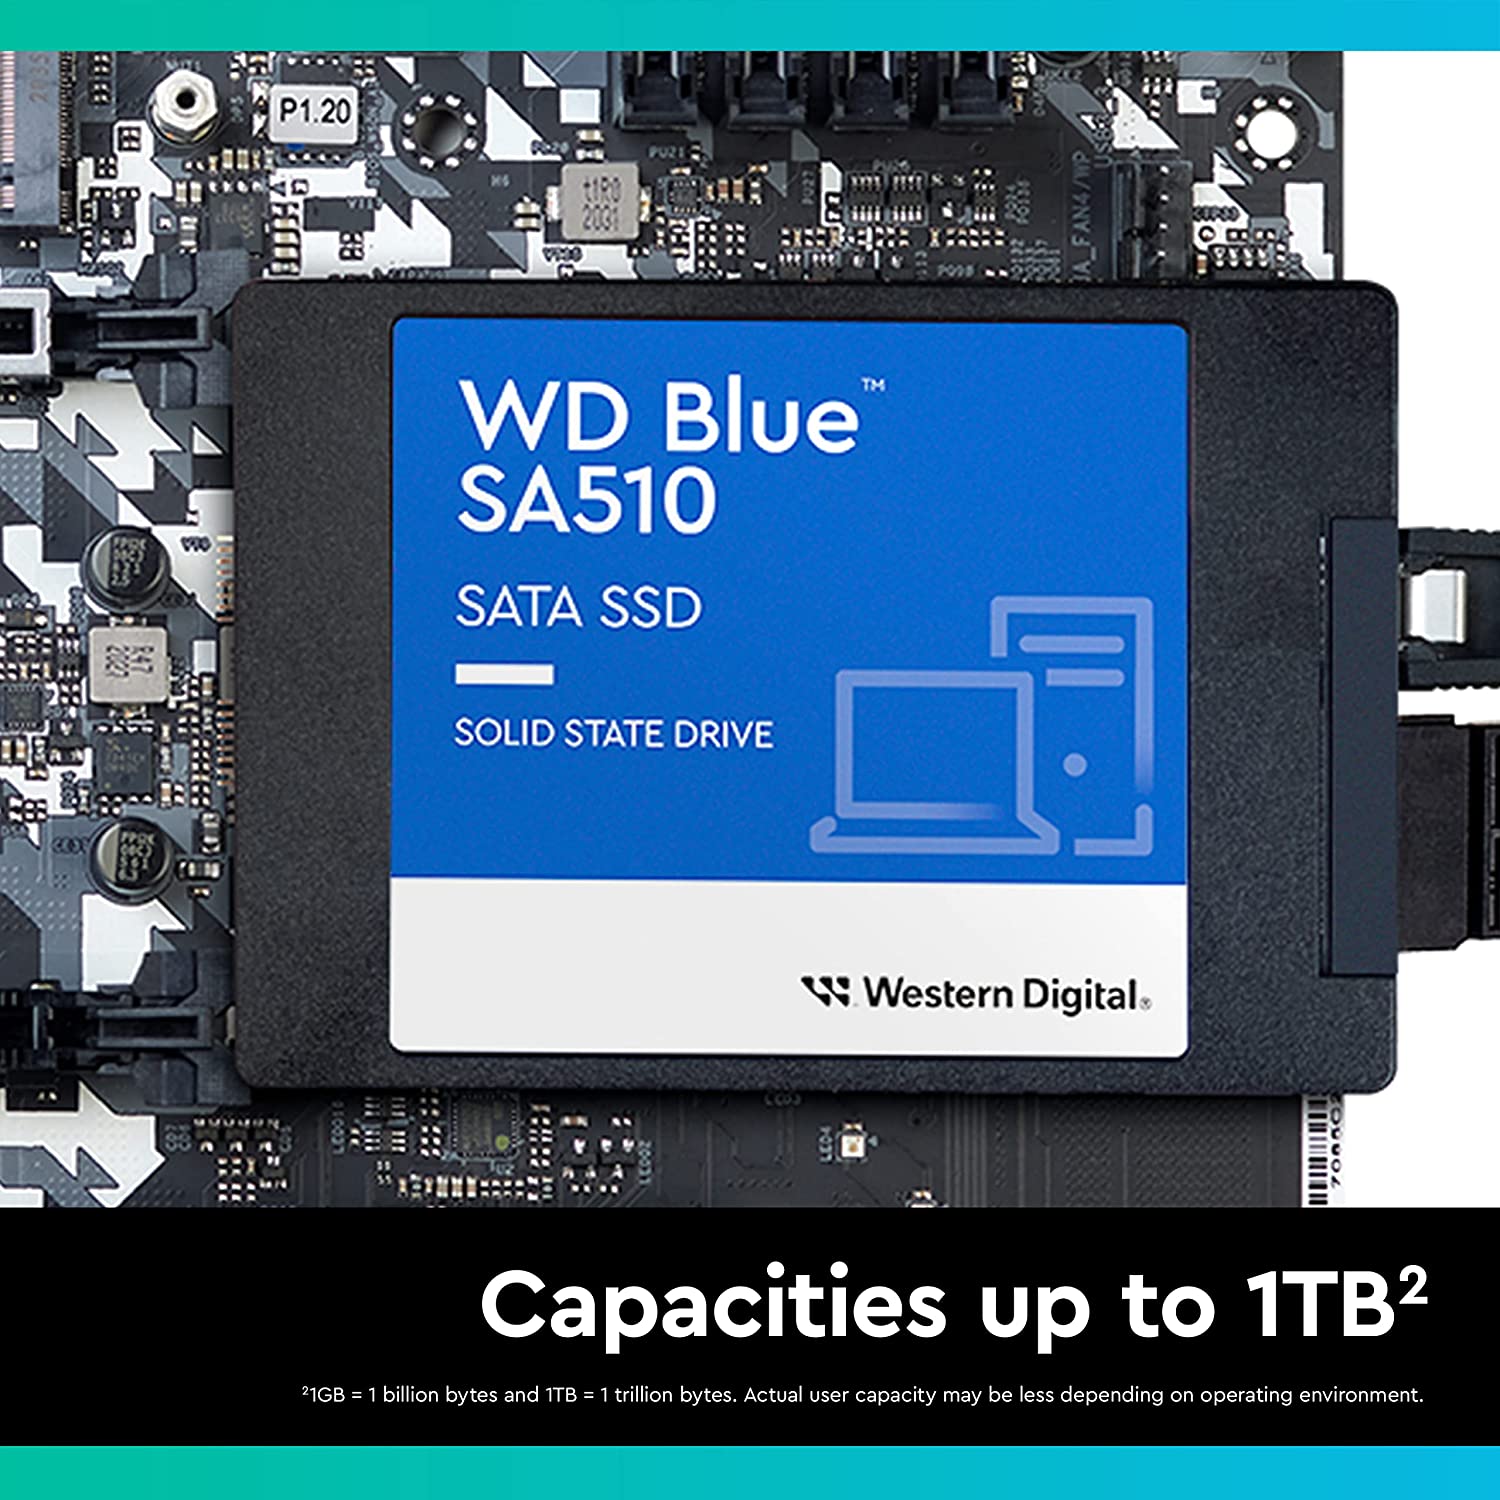 Western Digital 250GB WD Blue SA510 SATA Internal Solid State Drive SSD - SATA III 6 Gb/s, 2.5"/7mm, Up to 555 MB/s - WDS250G3B0A